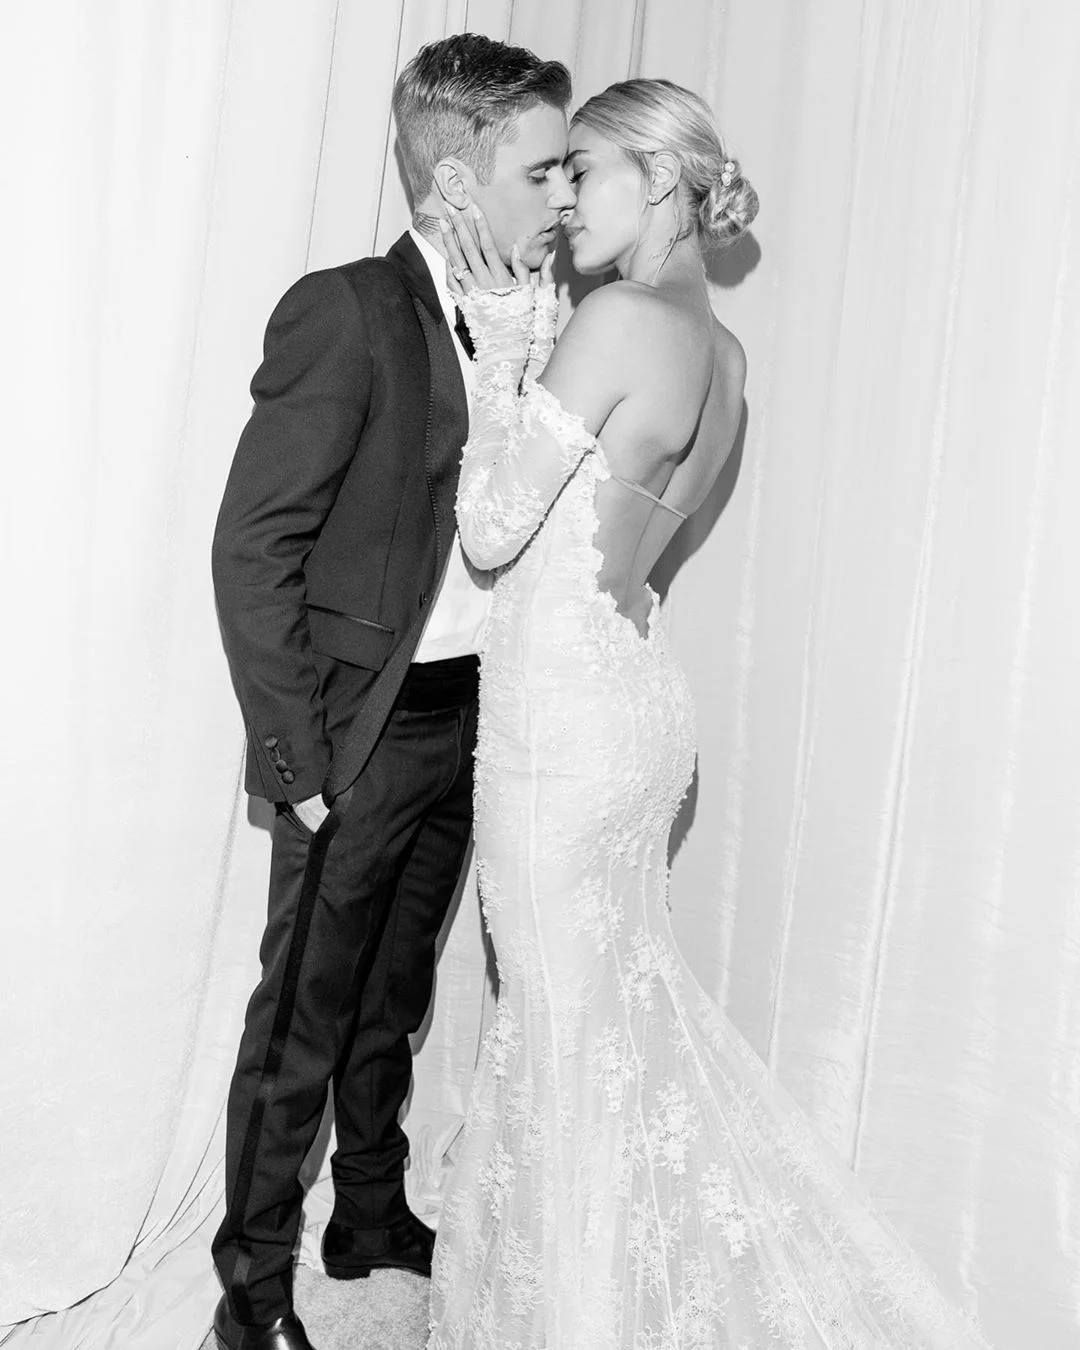 Хейли Бибер поделилась фото со свадьбы, на которых можно увидеть ее роскошное платье - фото 453223